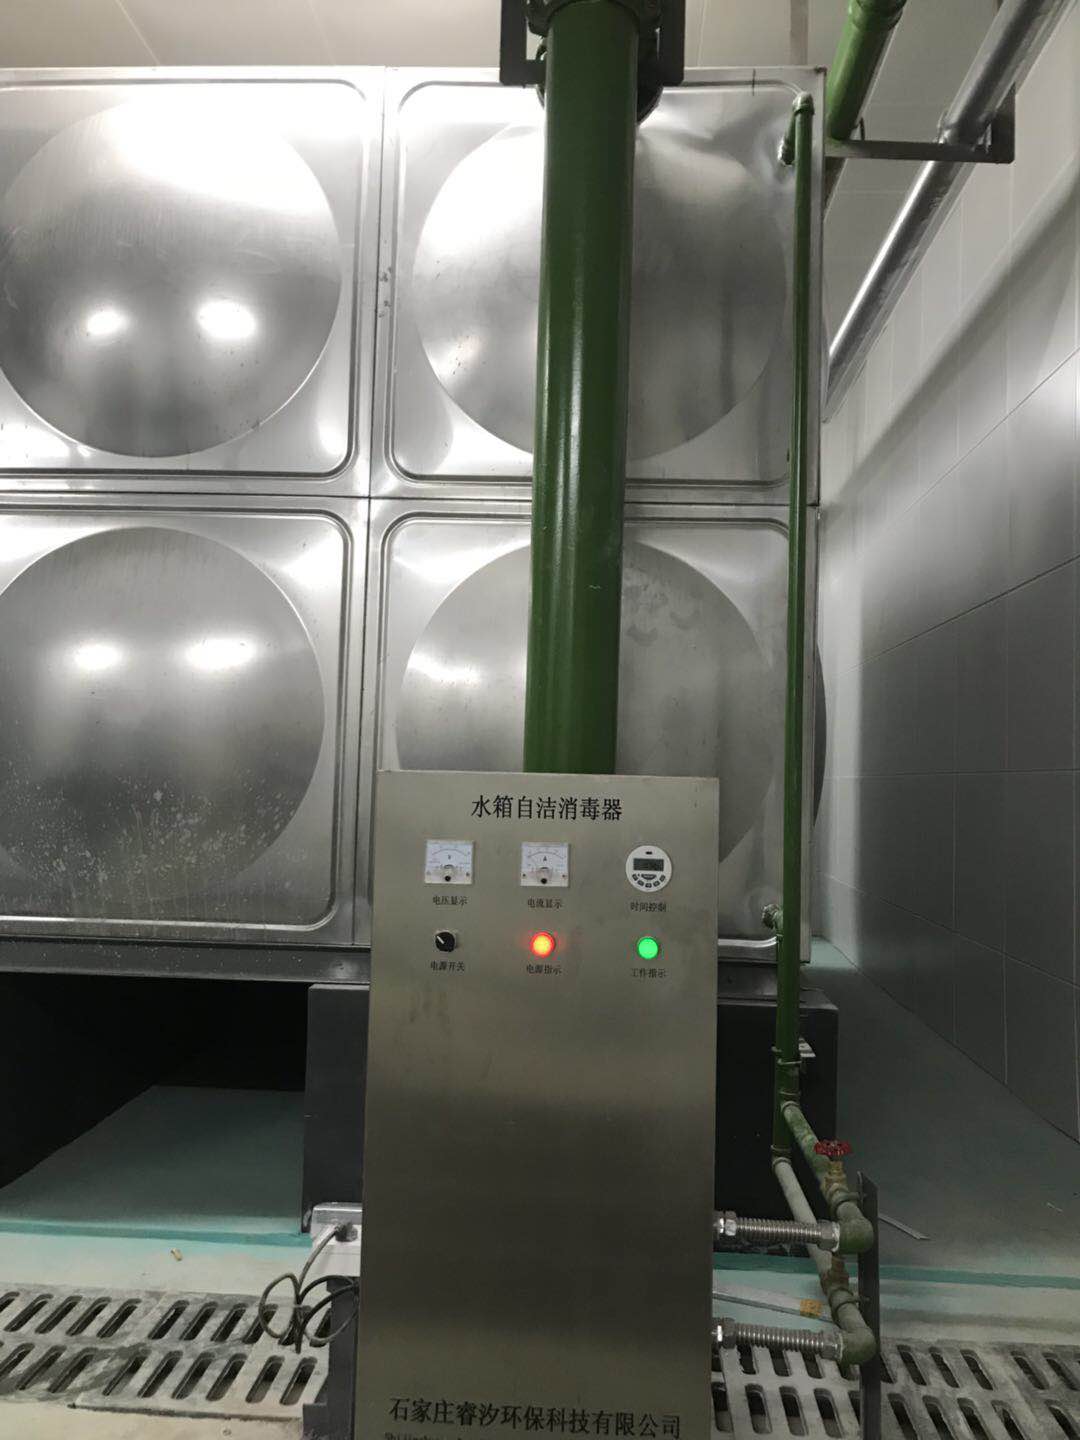 佛山市水箱自洁消毒器SCII-10Hb外置式水箱自洁消毒器